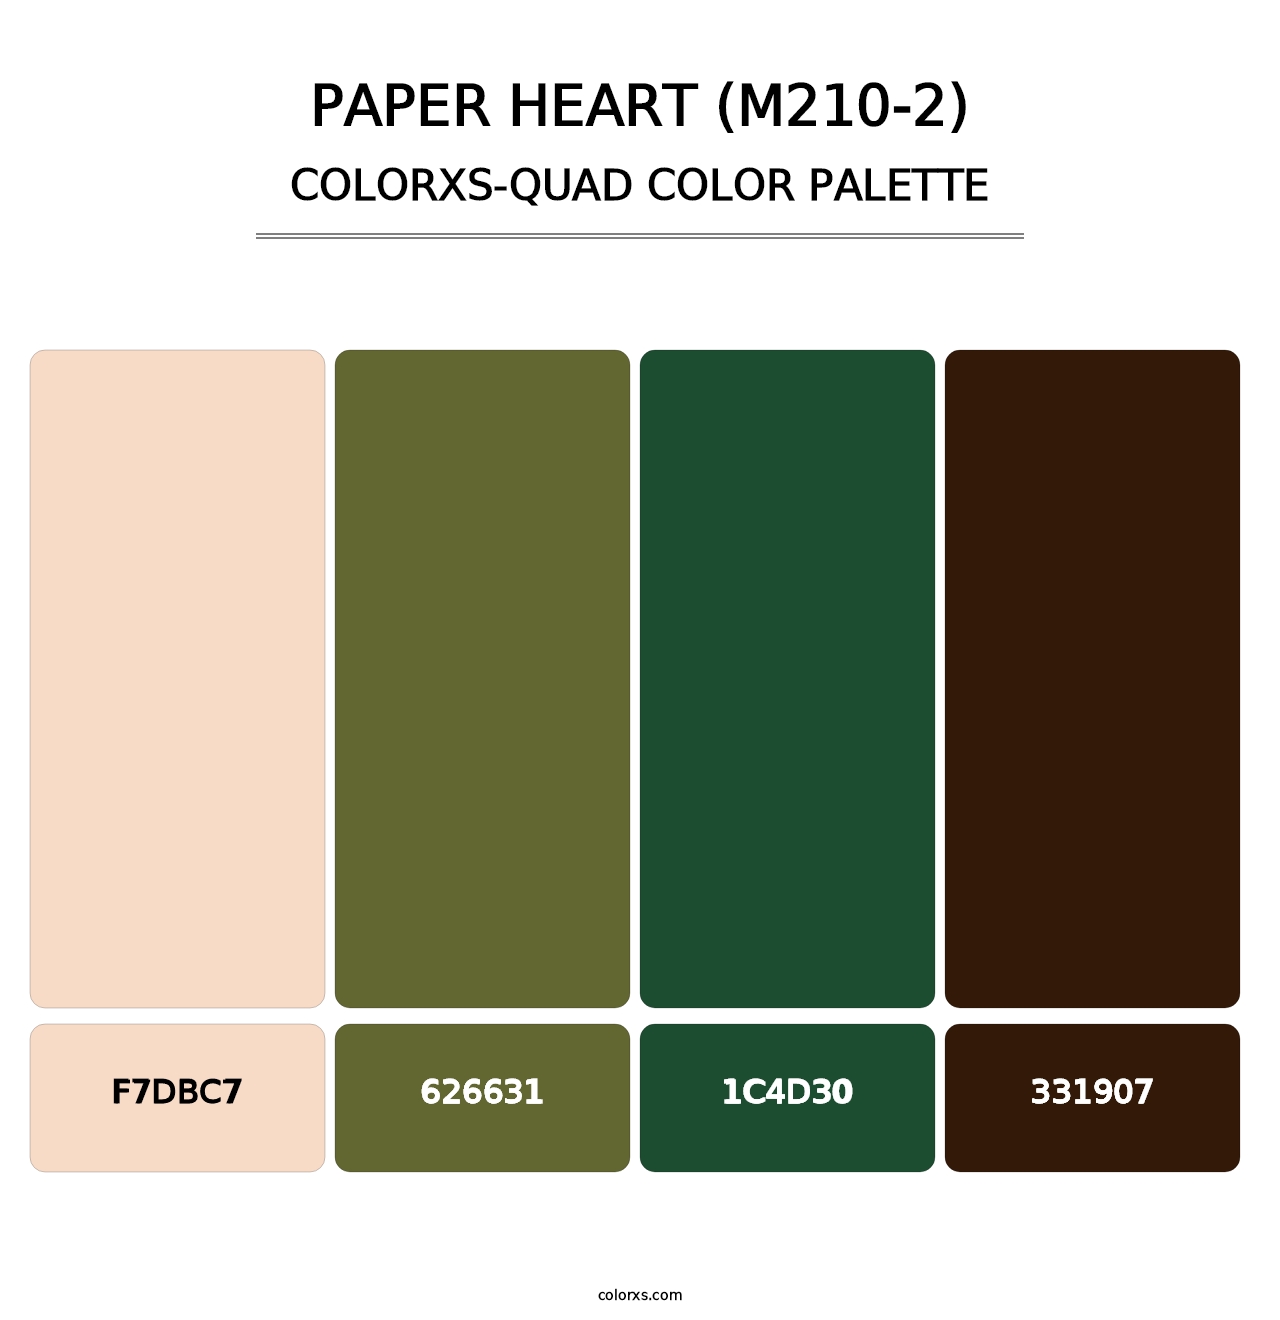 Paper Heart (M210-2) - Colorxs Quad Palette